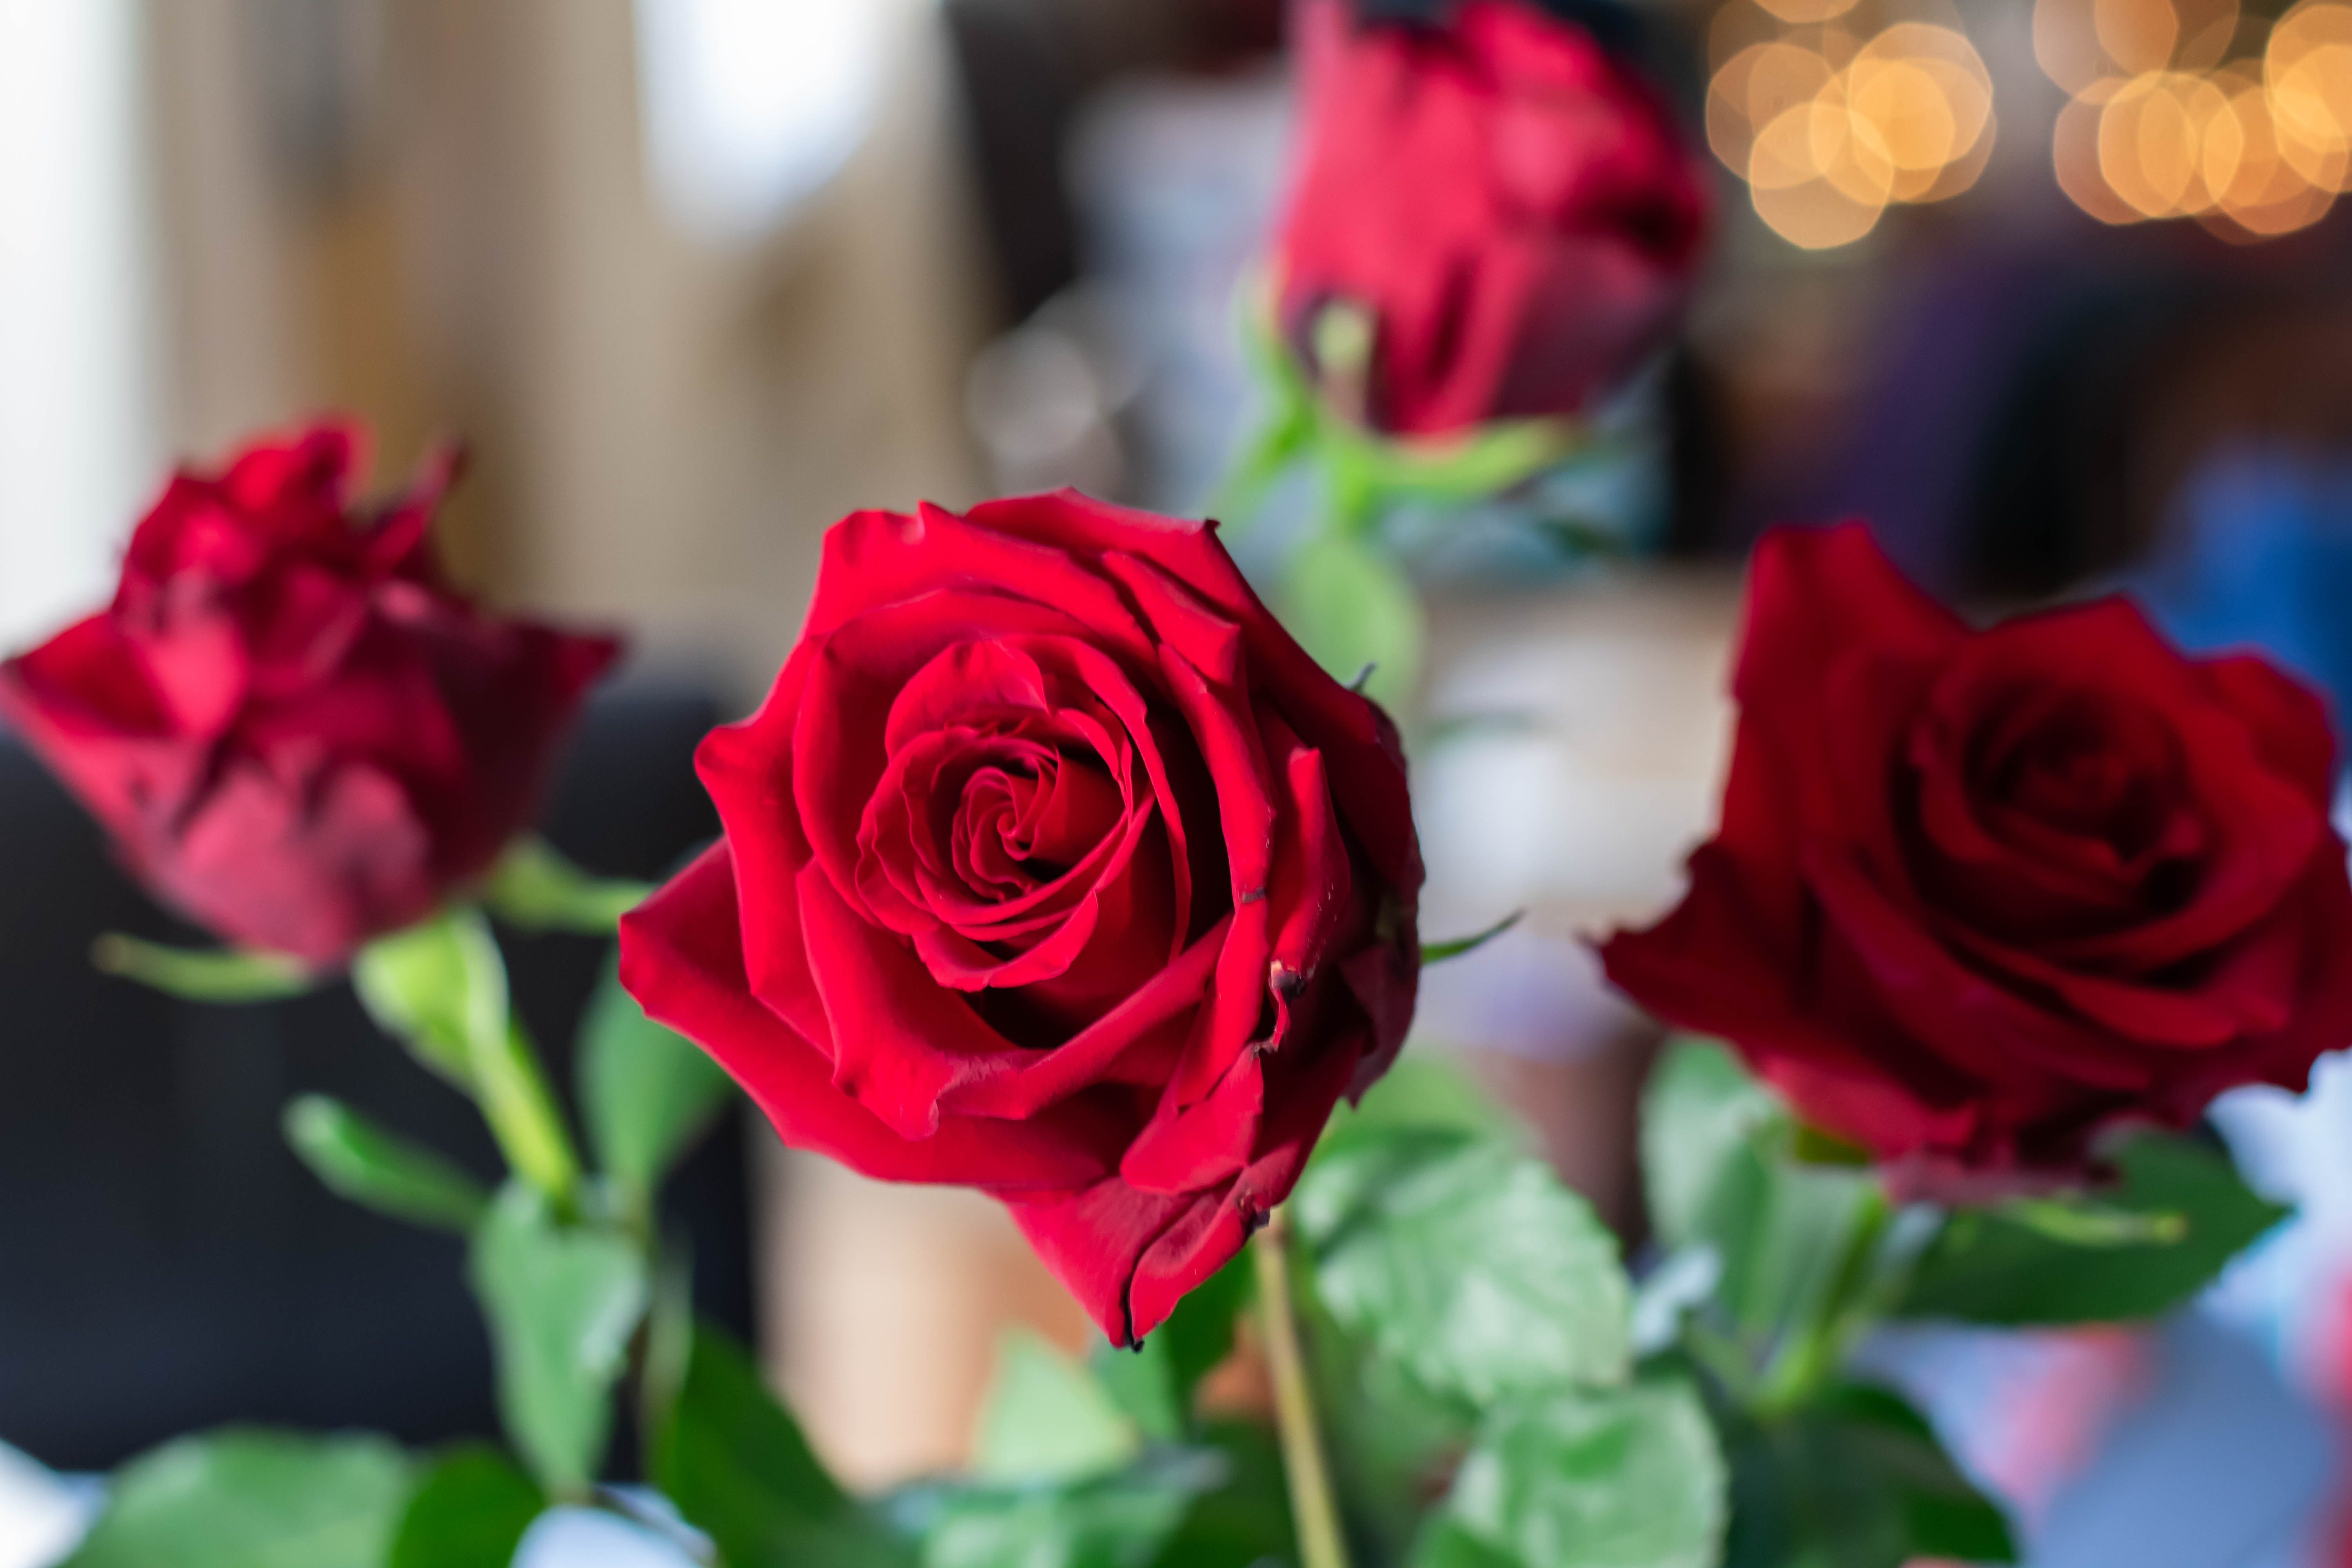  Dia dos Namorados deste ano deve ser o pior da história, segundo pesquisa da Fecomércio PR